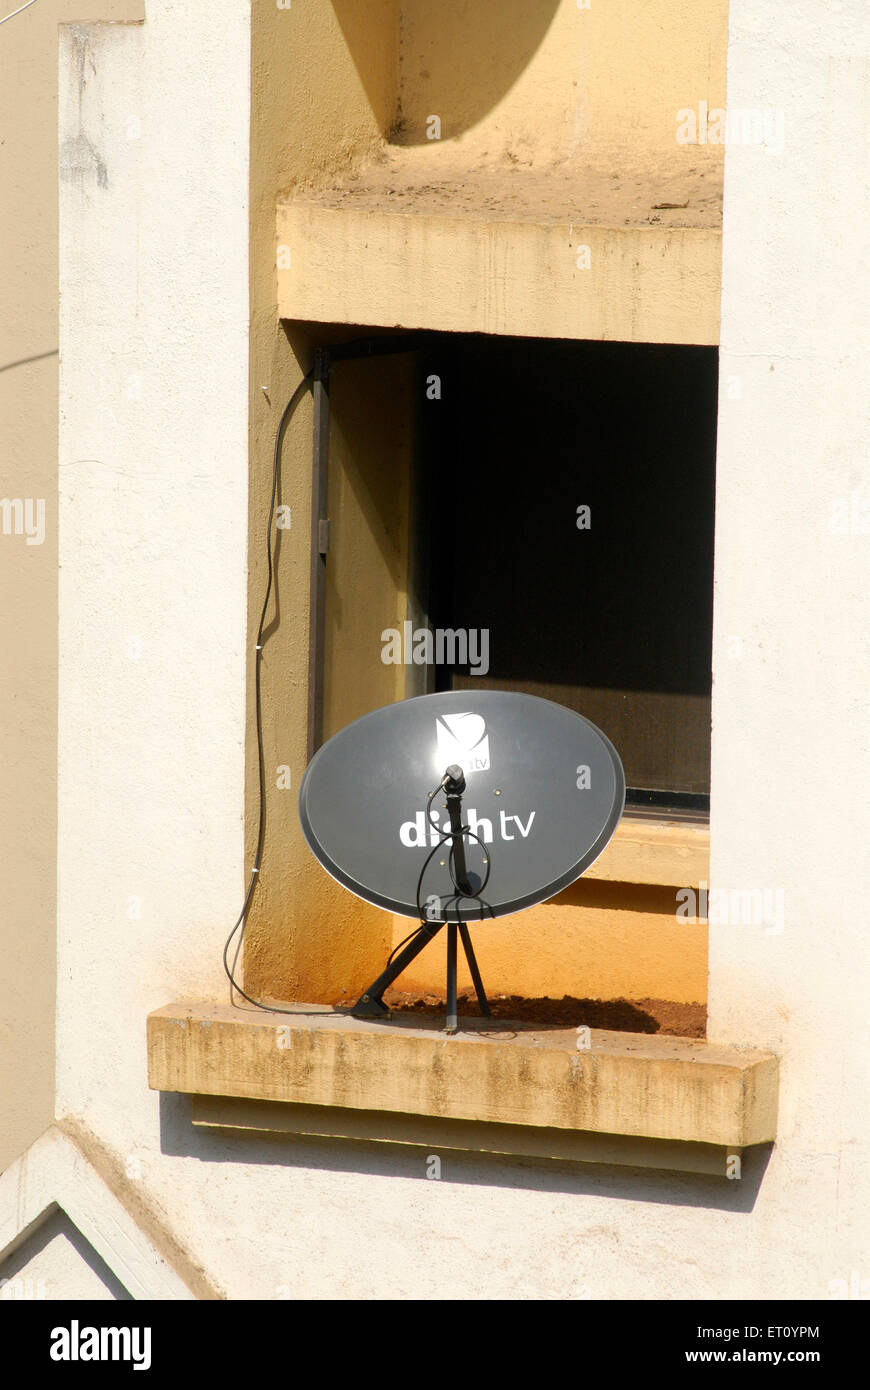 dish TV antenna for television direct to home DTH service via satellite, Borivali, Bombay, Mumbai, Maharashtra, India Stock Photo